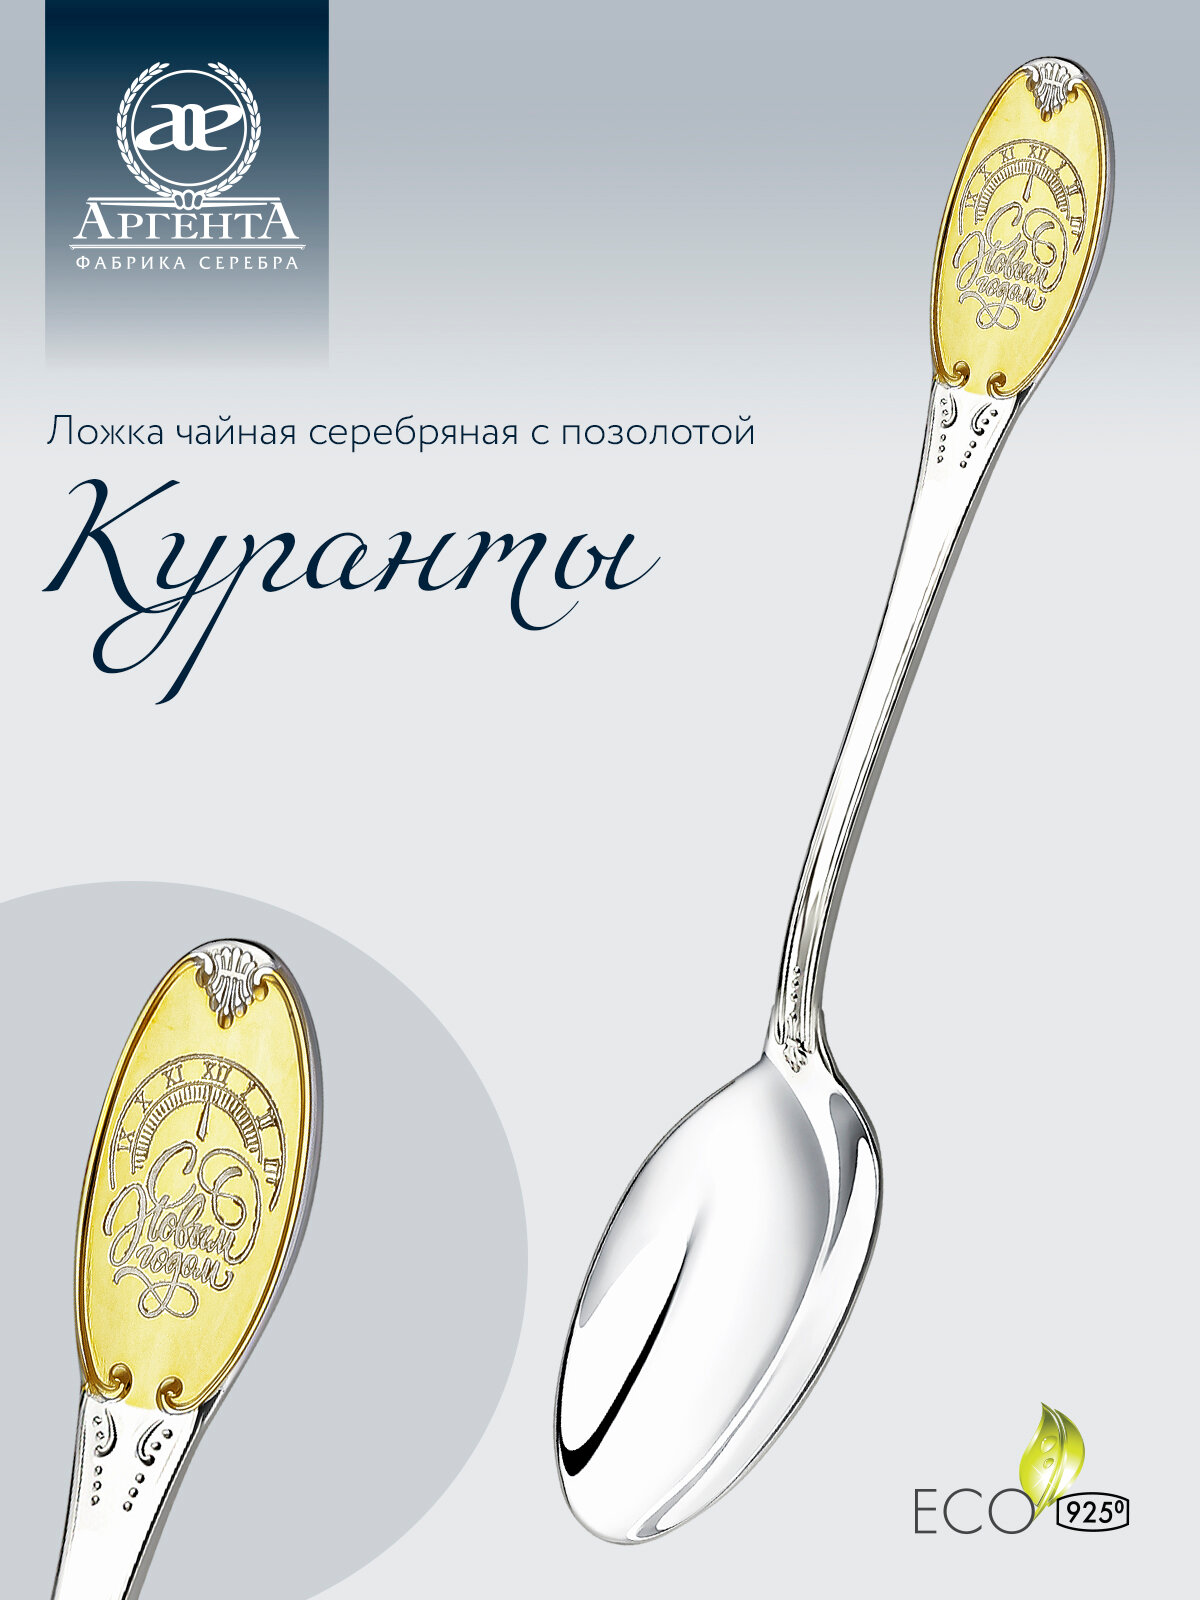 Серебряная чайная ложка с логотипом "Куранты" с позолотой от бренда "Аргента"